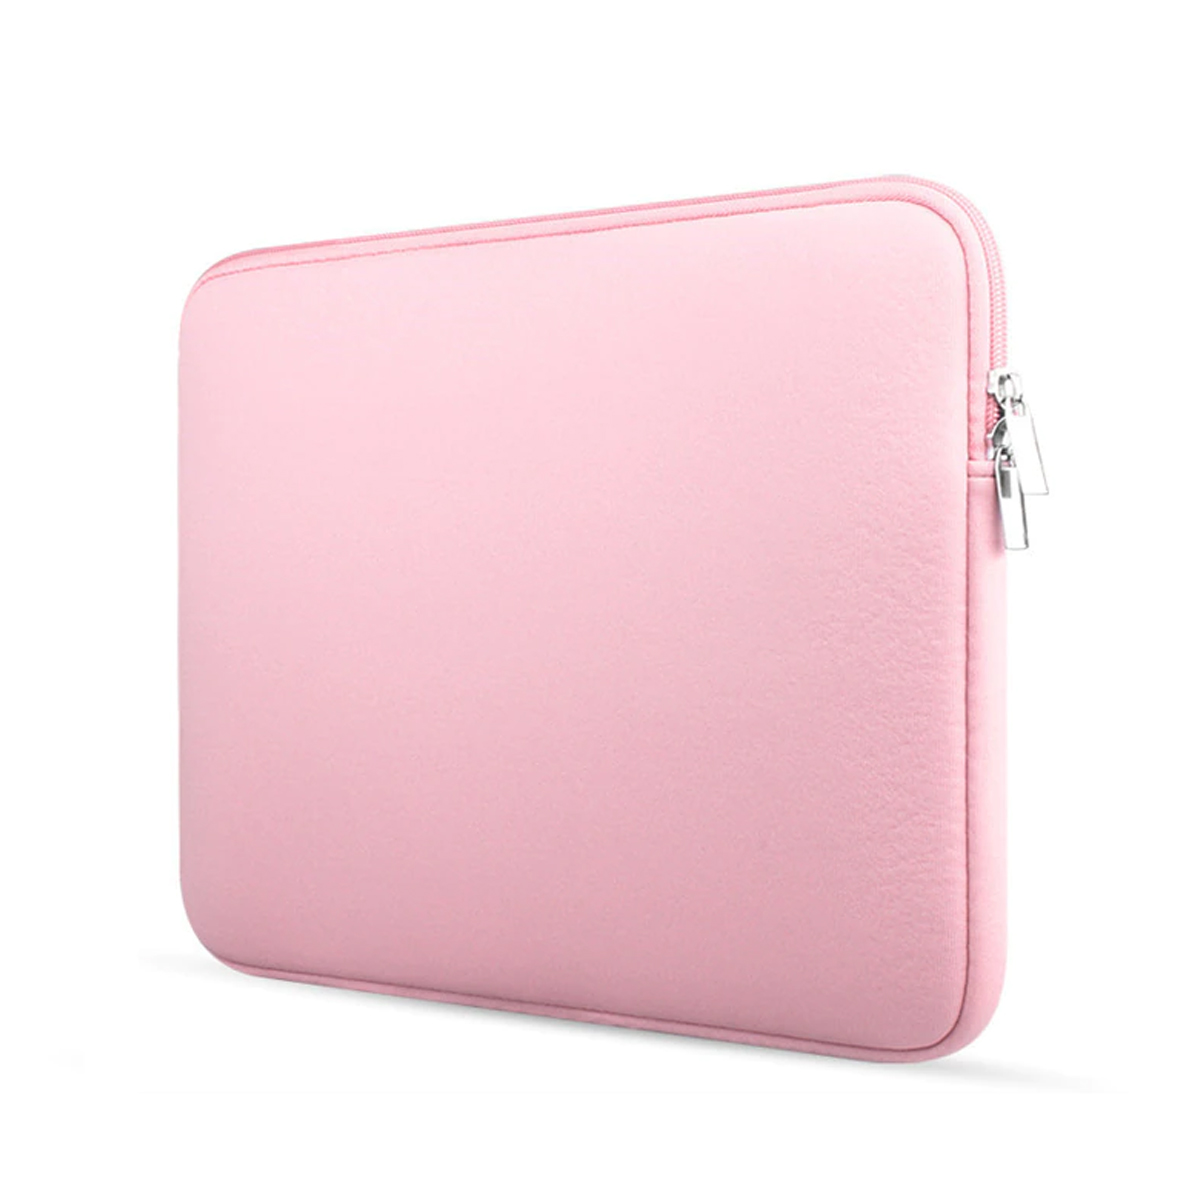 Voorzien Controversieel grijnzend Laptop en Macbook Sleeve - 13.3 inch - Roze | Case2go.nl